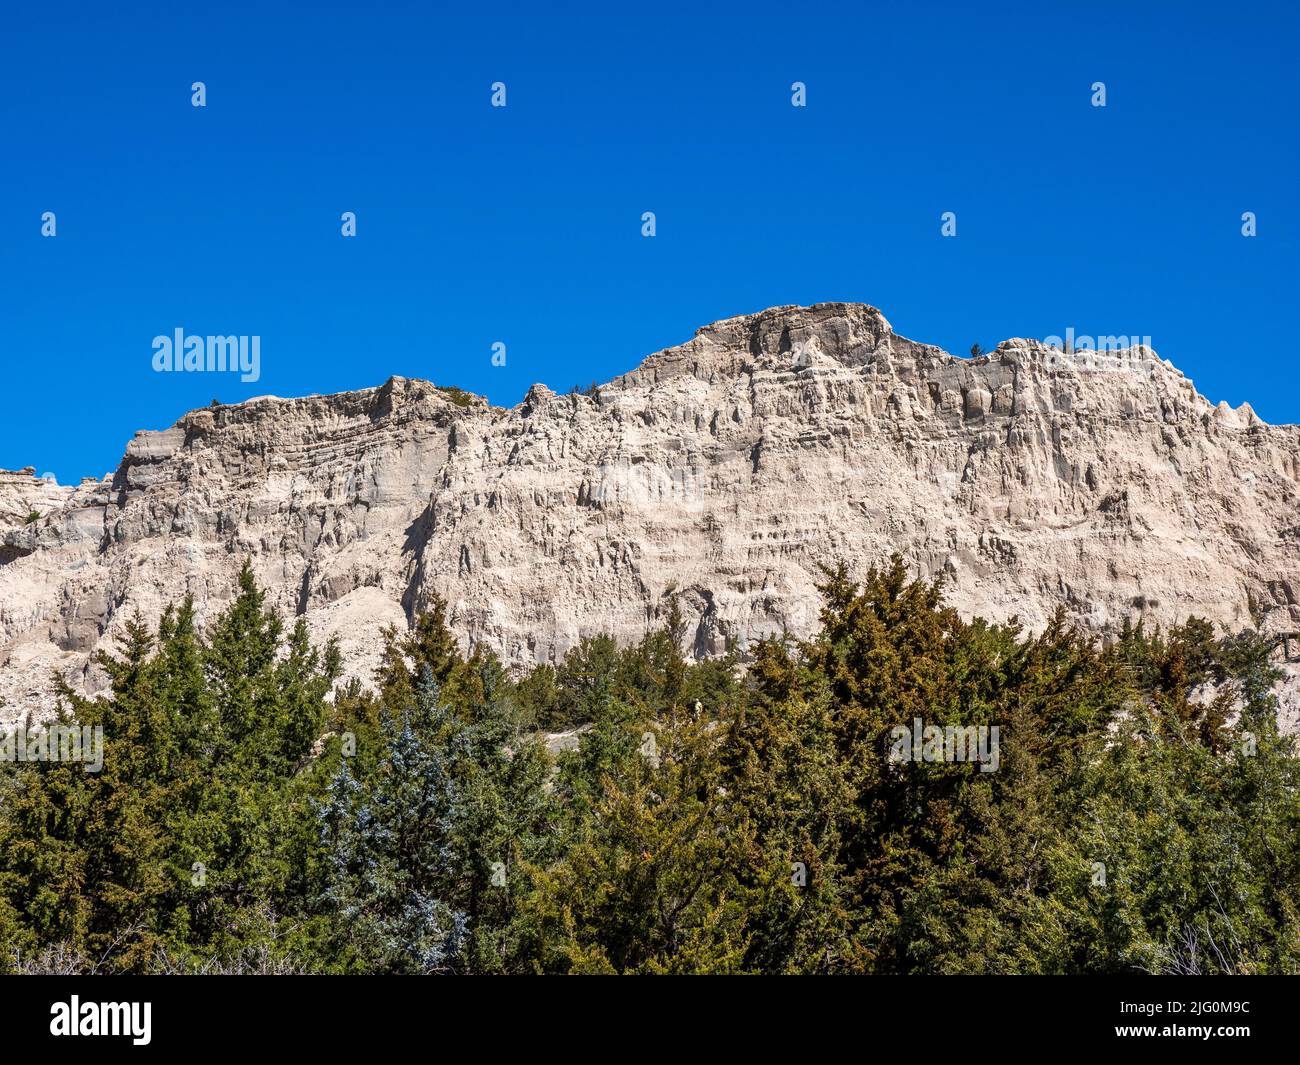 Vista de la pared de un acantilado de roca desde la ruta Cliff Shelf Nature Trail en el Parque Nacional Badlands en Dakota del Sur, EE.UU Foto de stock